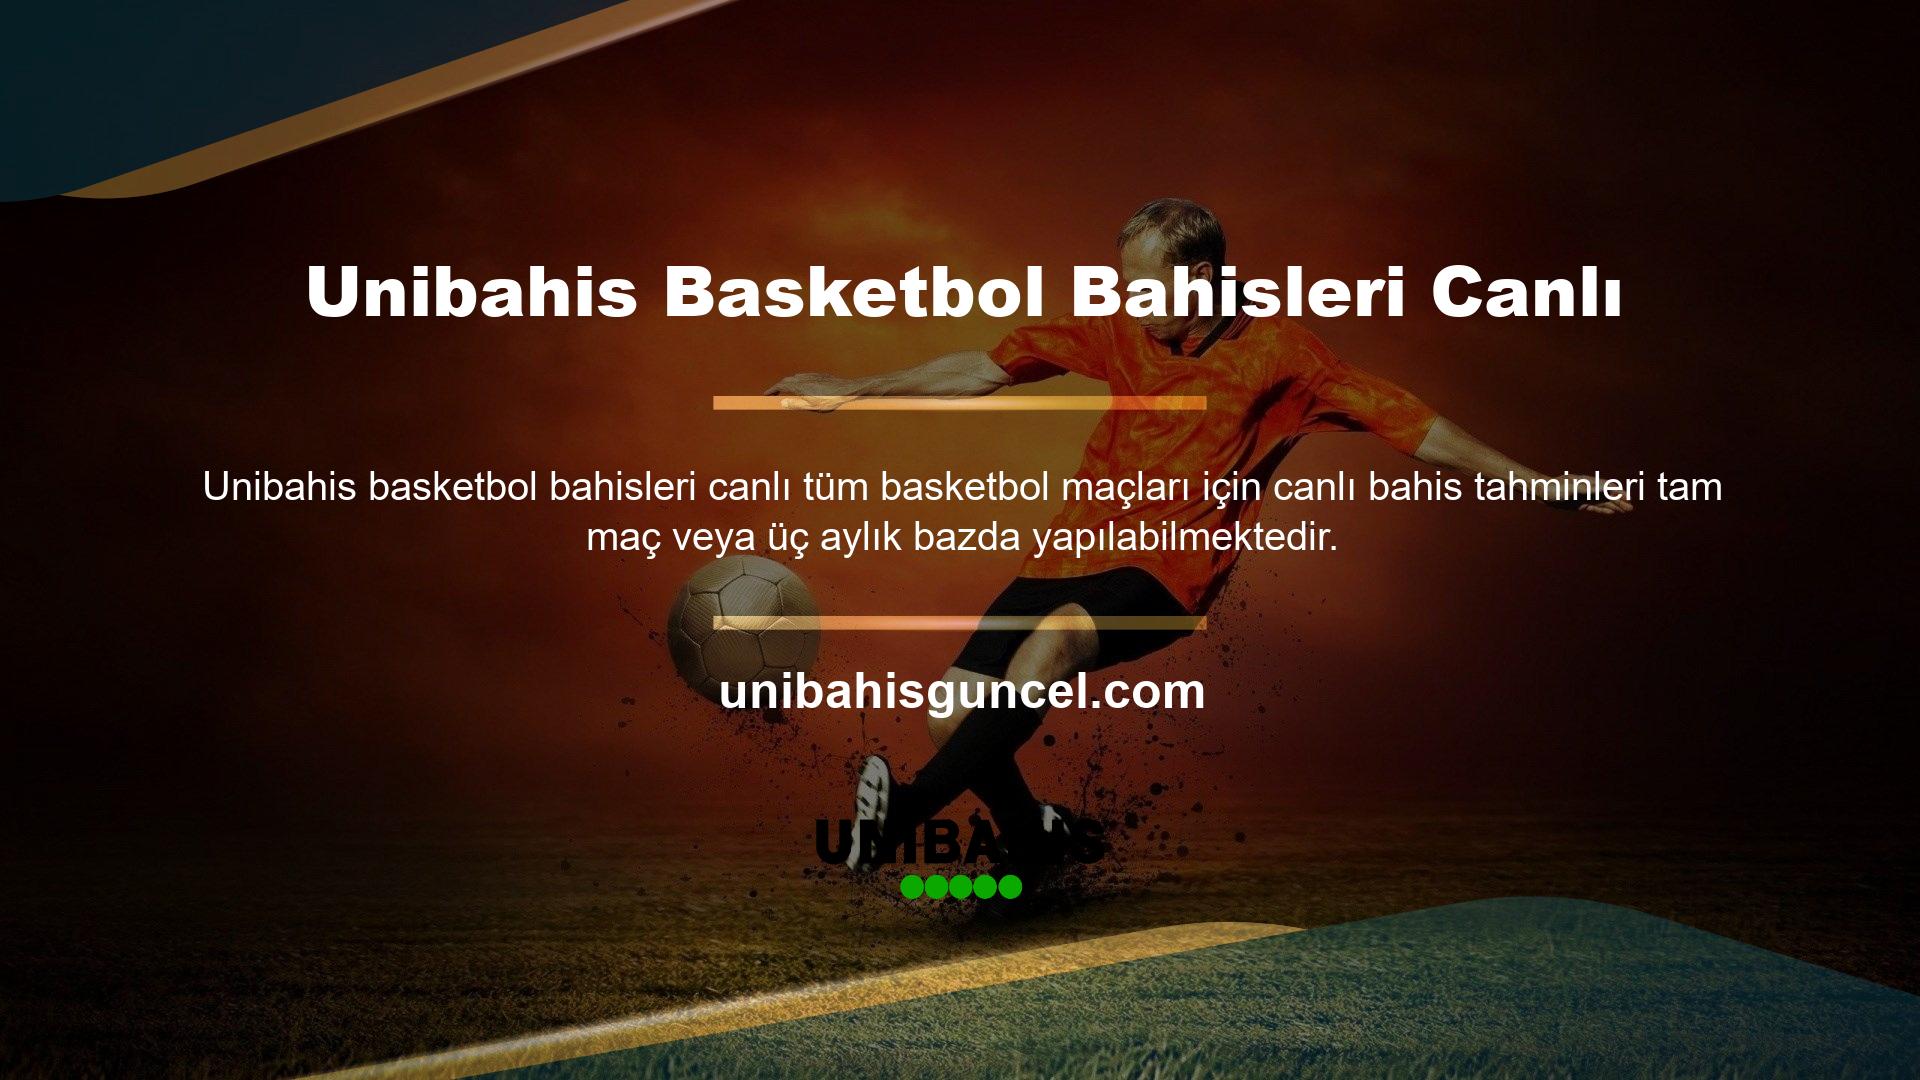 Türkiye Basketbol Ligi bahis sitesi Unibahis, çeşitli basketbol bahis seçenekleri sunmaktadır